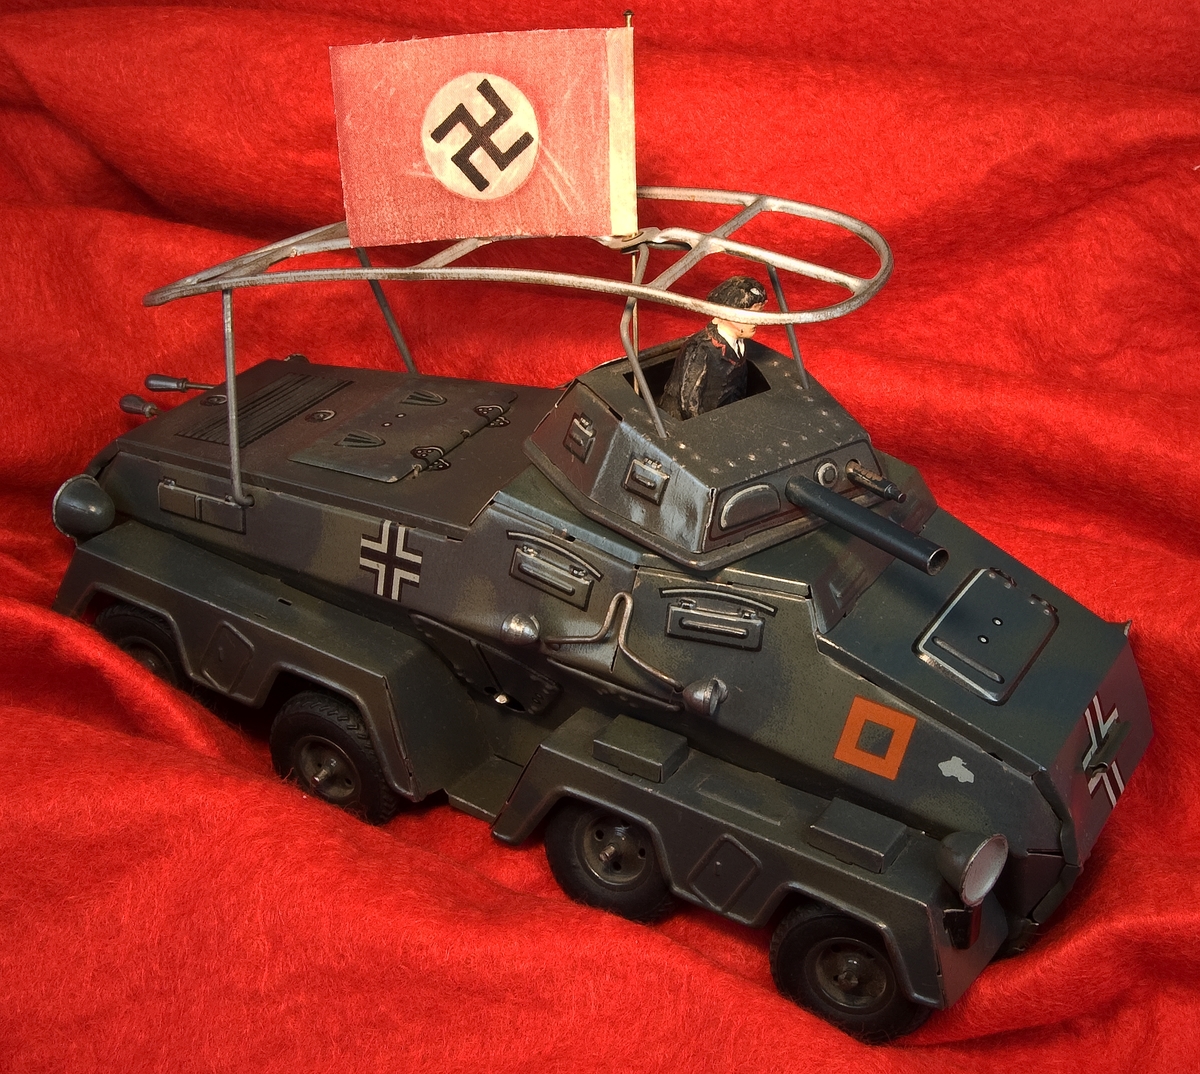 Leksaksstridsvagn av lithograferad plåt. Mörkt grön med dekorationer i rött och vit/svart. Okänd tillverkning. Saknar stämplar. Till stridsvagnen finns en soldat, förmodligen av elastolin, en nazistflagga samt en nyckel för uppskruvning.